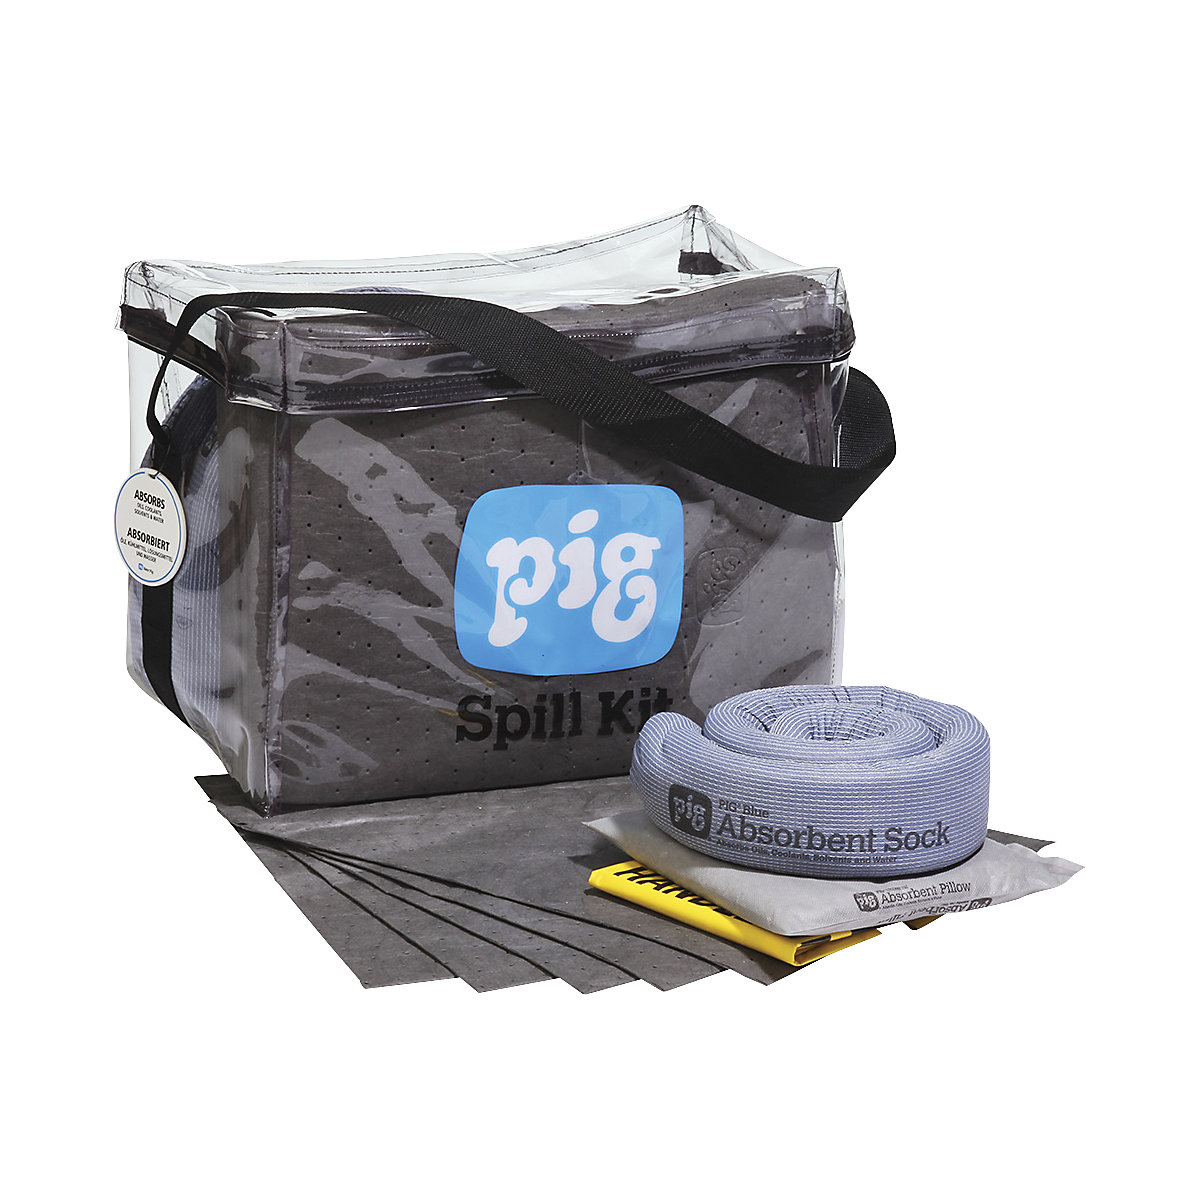 Emergency kit in a transparent bag - PIG